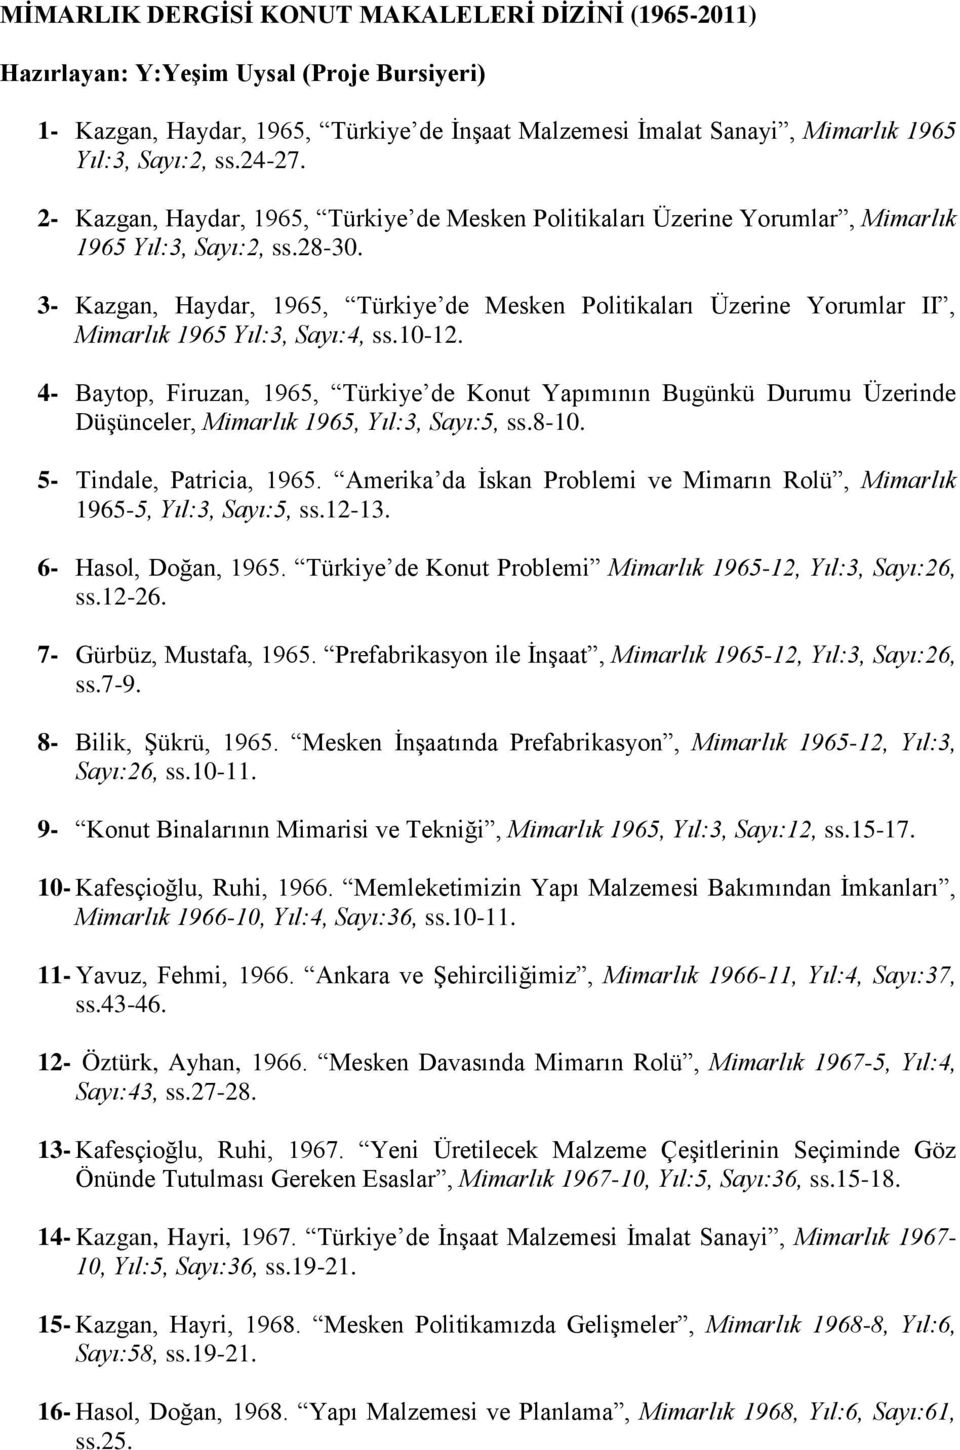 3- Kazgan, Haydar, 1965, Türkiye de Mesken Politikaları Üzerine Yorumlar II, Mimarlık 1965 Yıl:3, Sayı:4, ss.10-12.